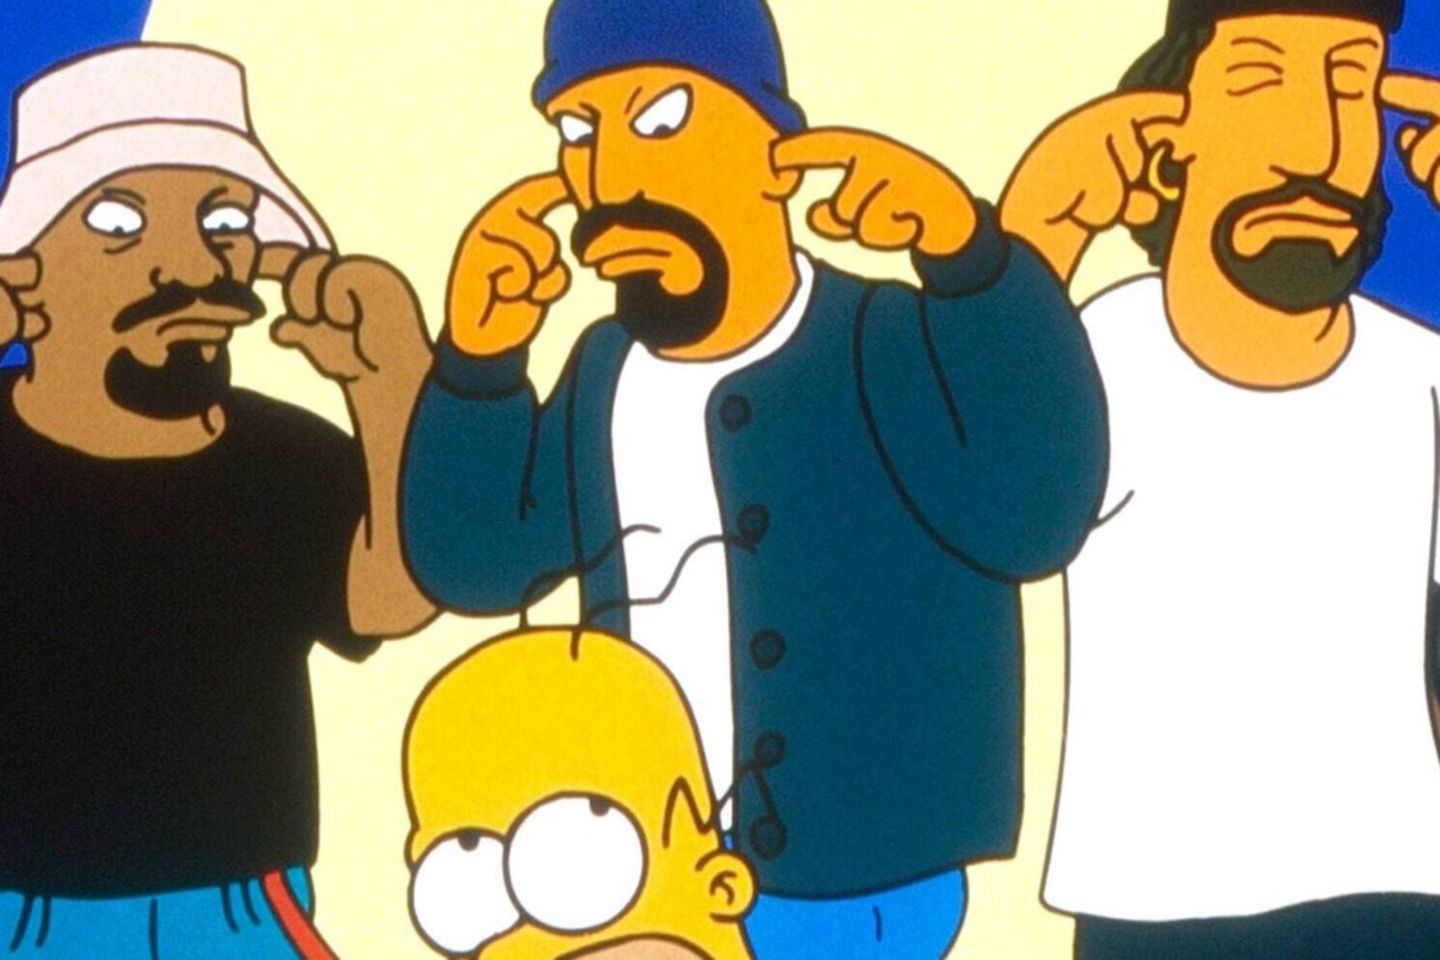 Die Mitglieder der Gruppe Cypress Hill als "Simpsons"-Figuren.